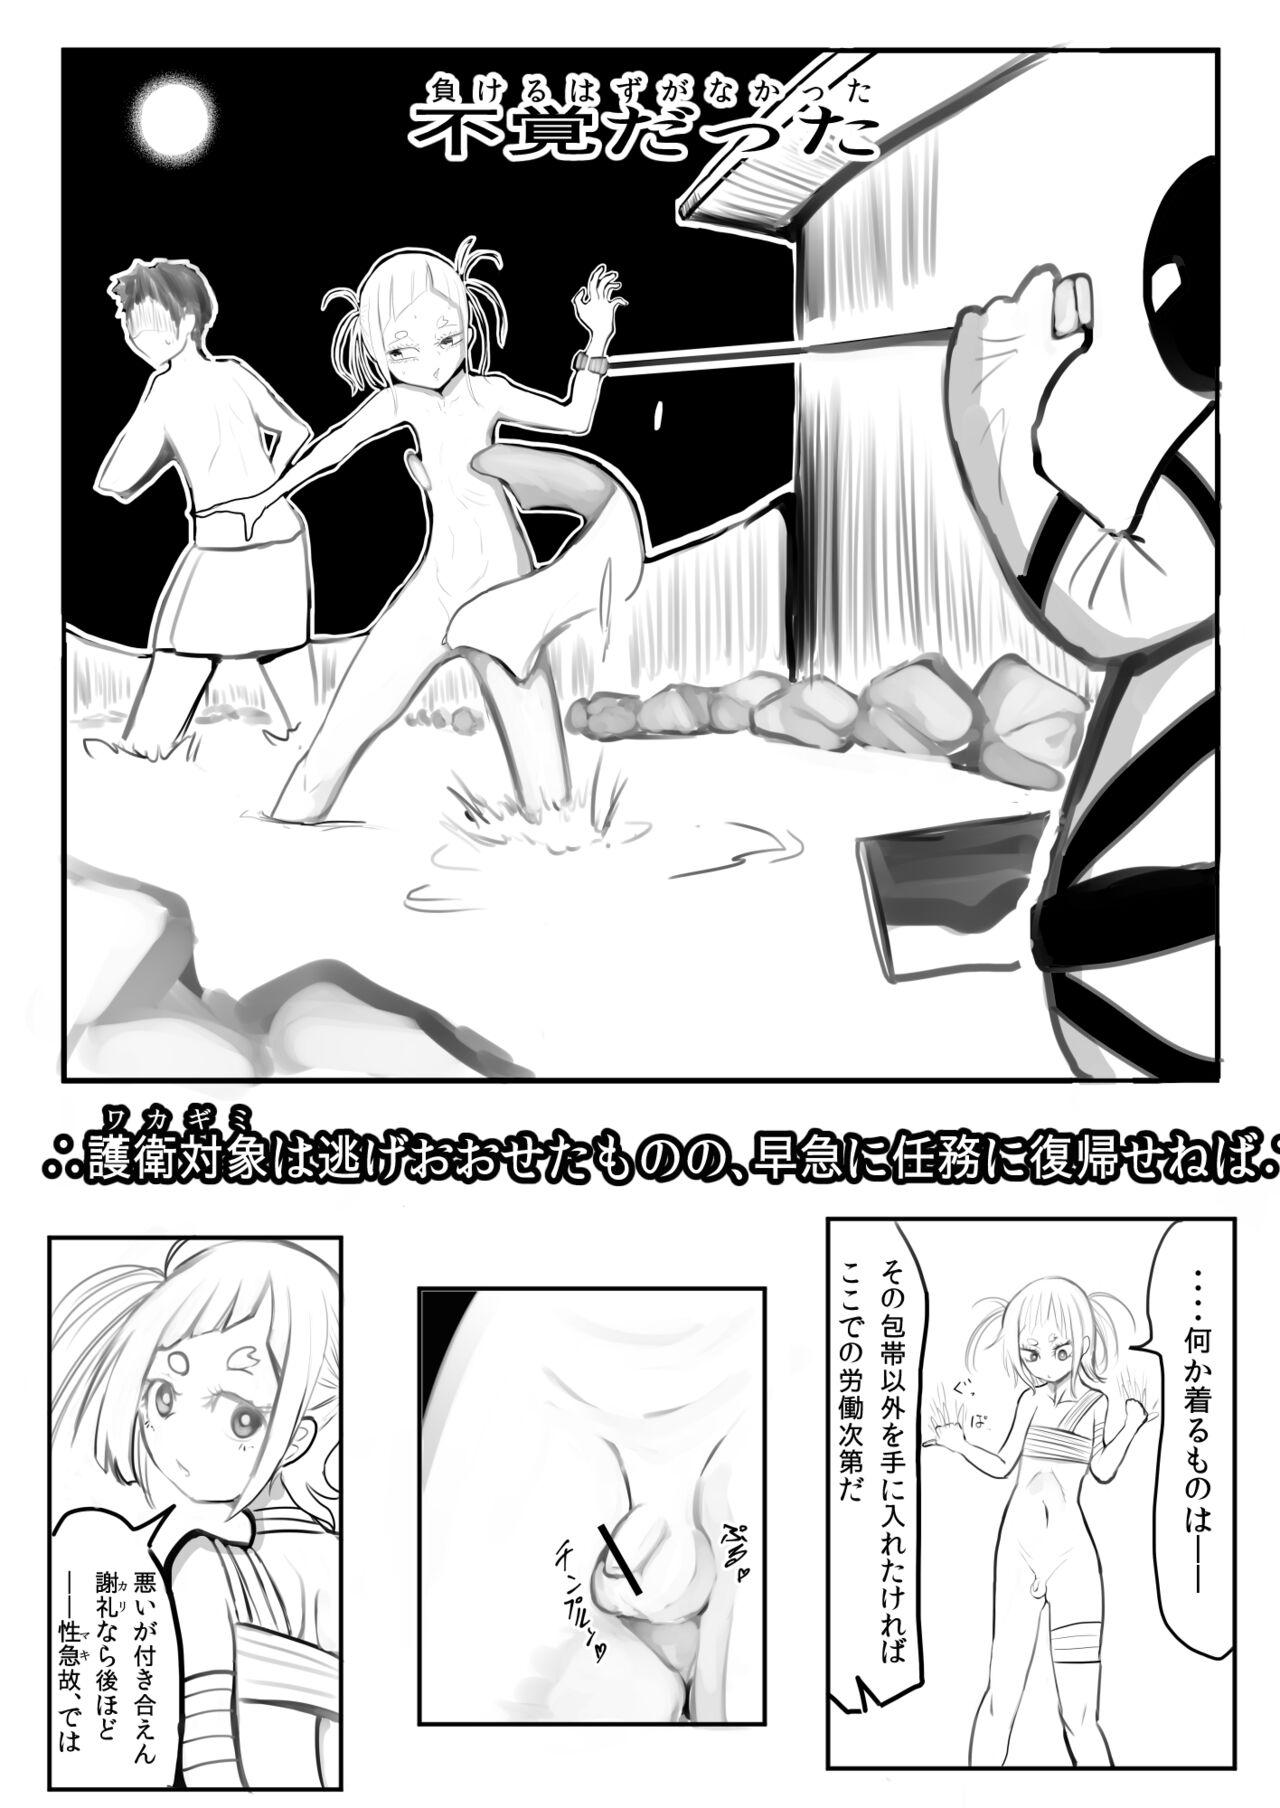 Otokonoko Manga 5